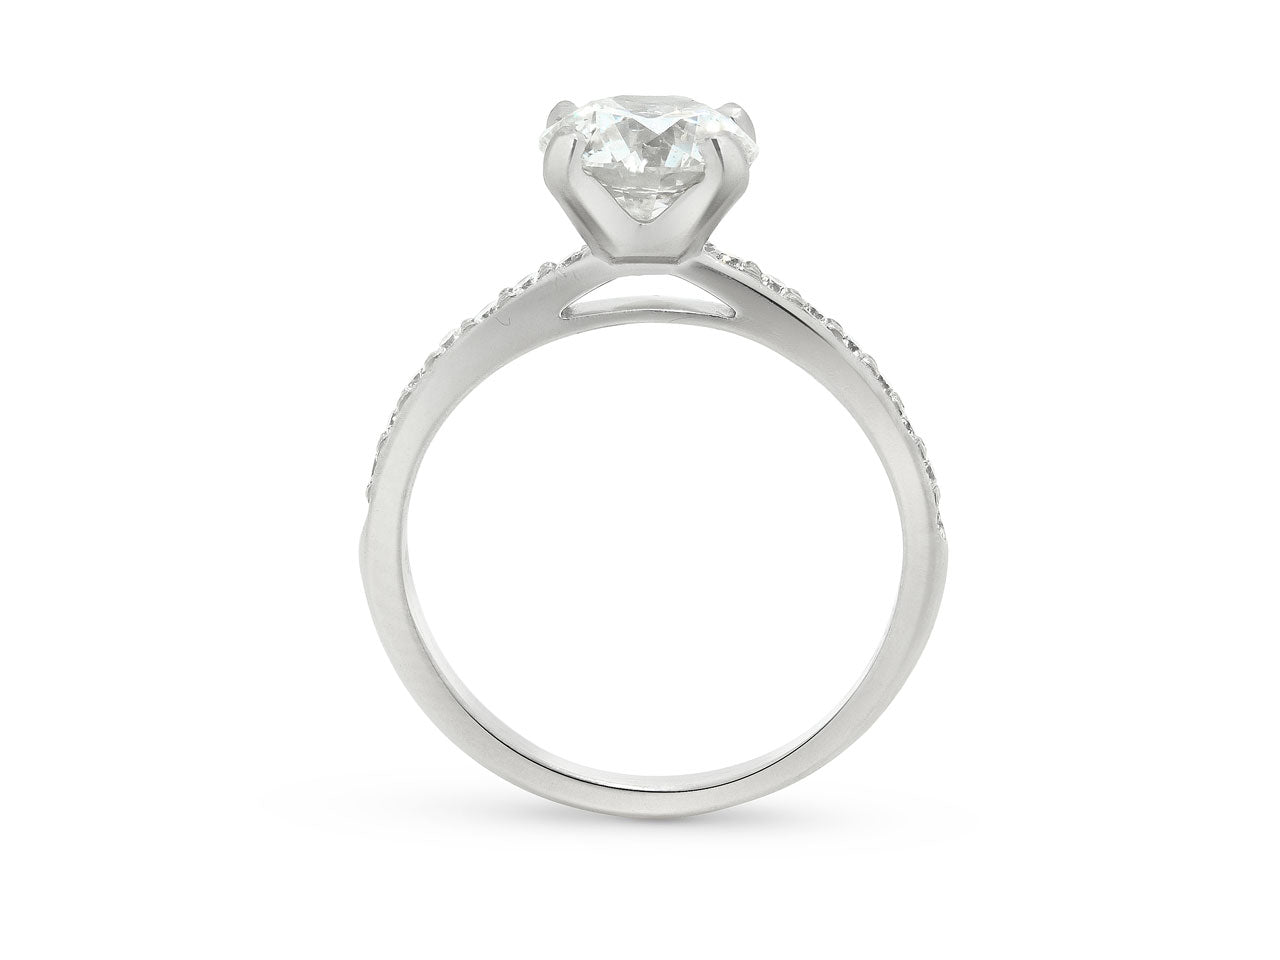 DeBeers 'Classic Pavé' Diamond Solitaire Ring, 1.51 carat H/SI2, in Platinum